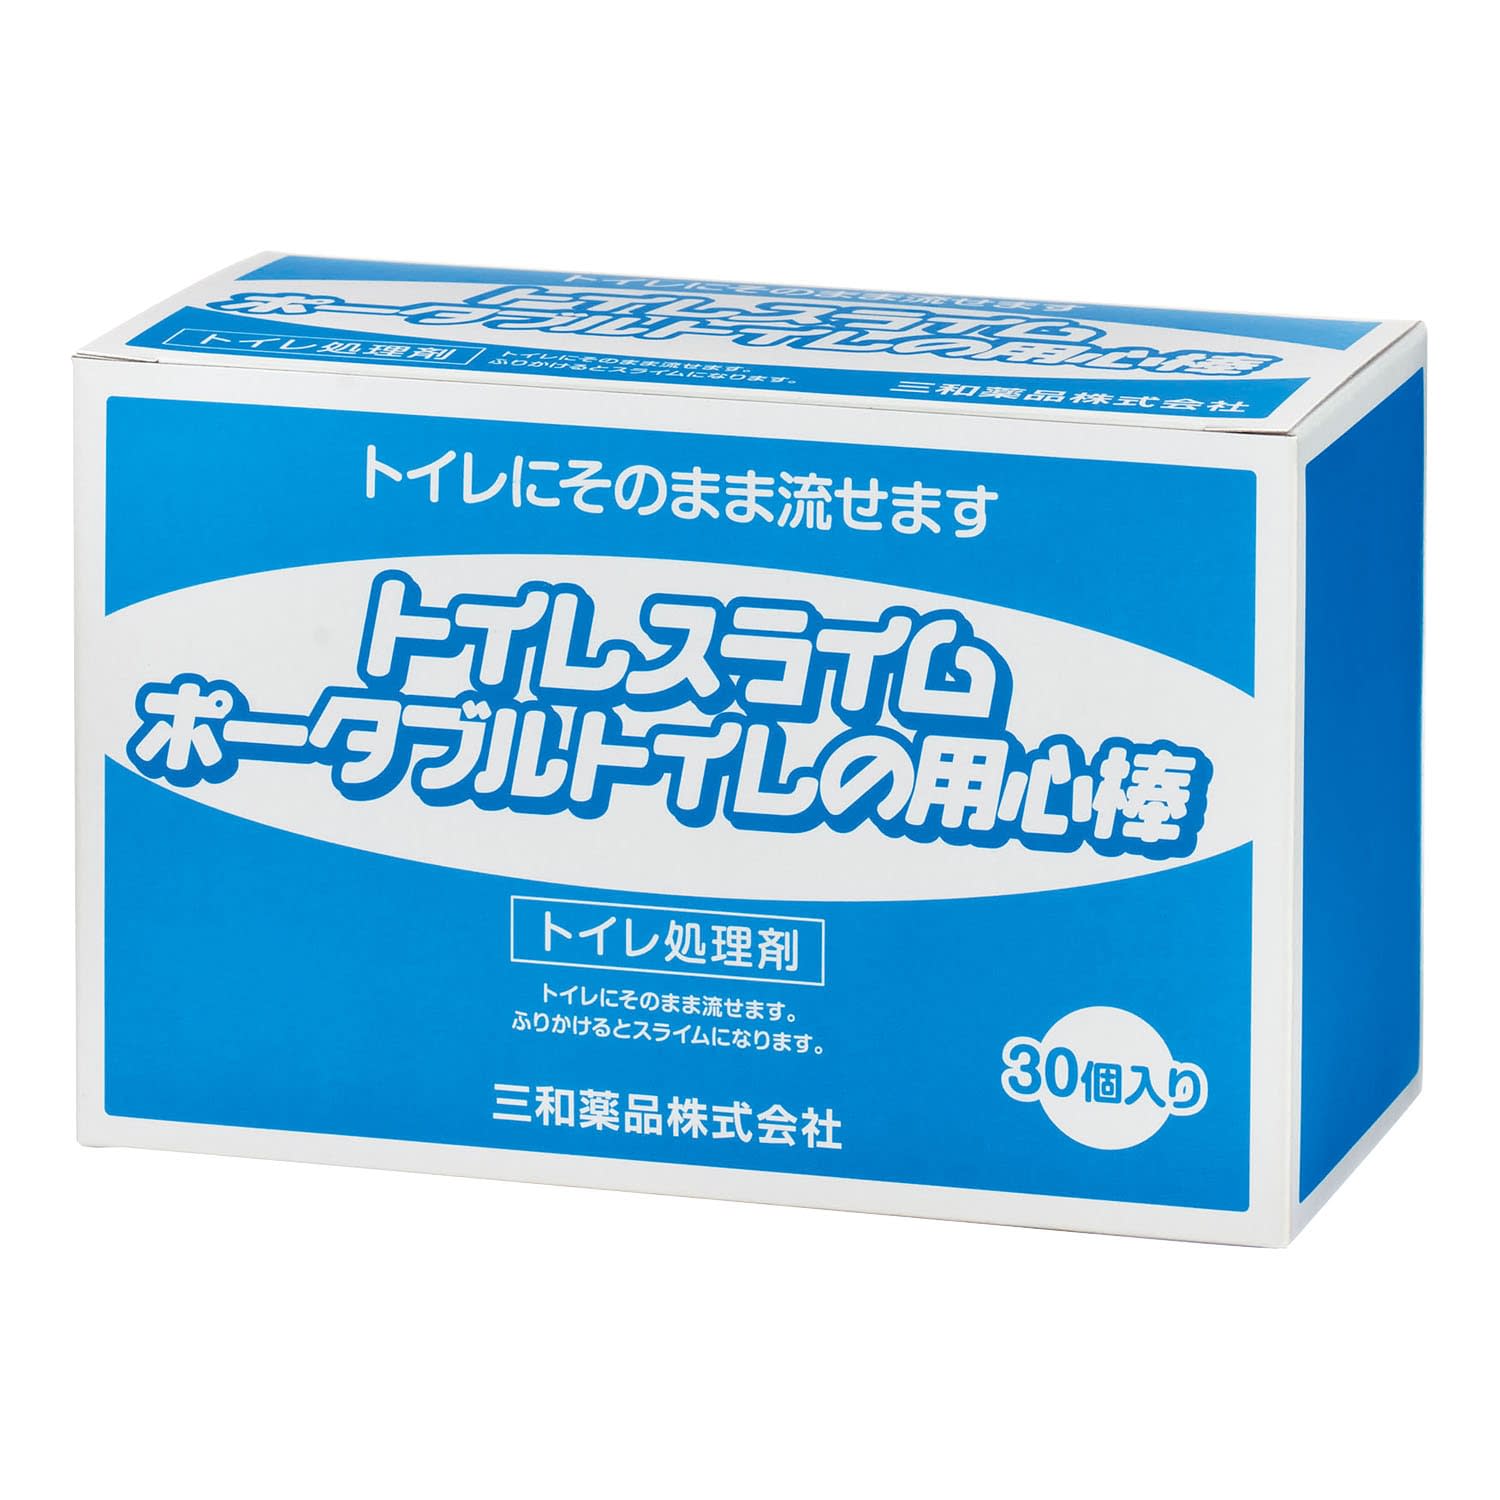 トイレ処理剤 トイレスライム 5GX30ホウイリ5GX30ﾎｳｲﾘ(24-8063-00)【三和薬品】(販売単位:10)